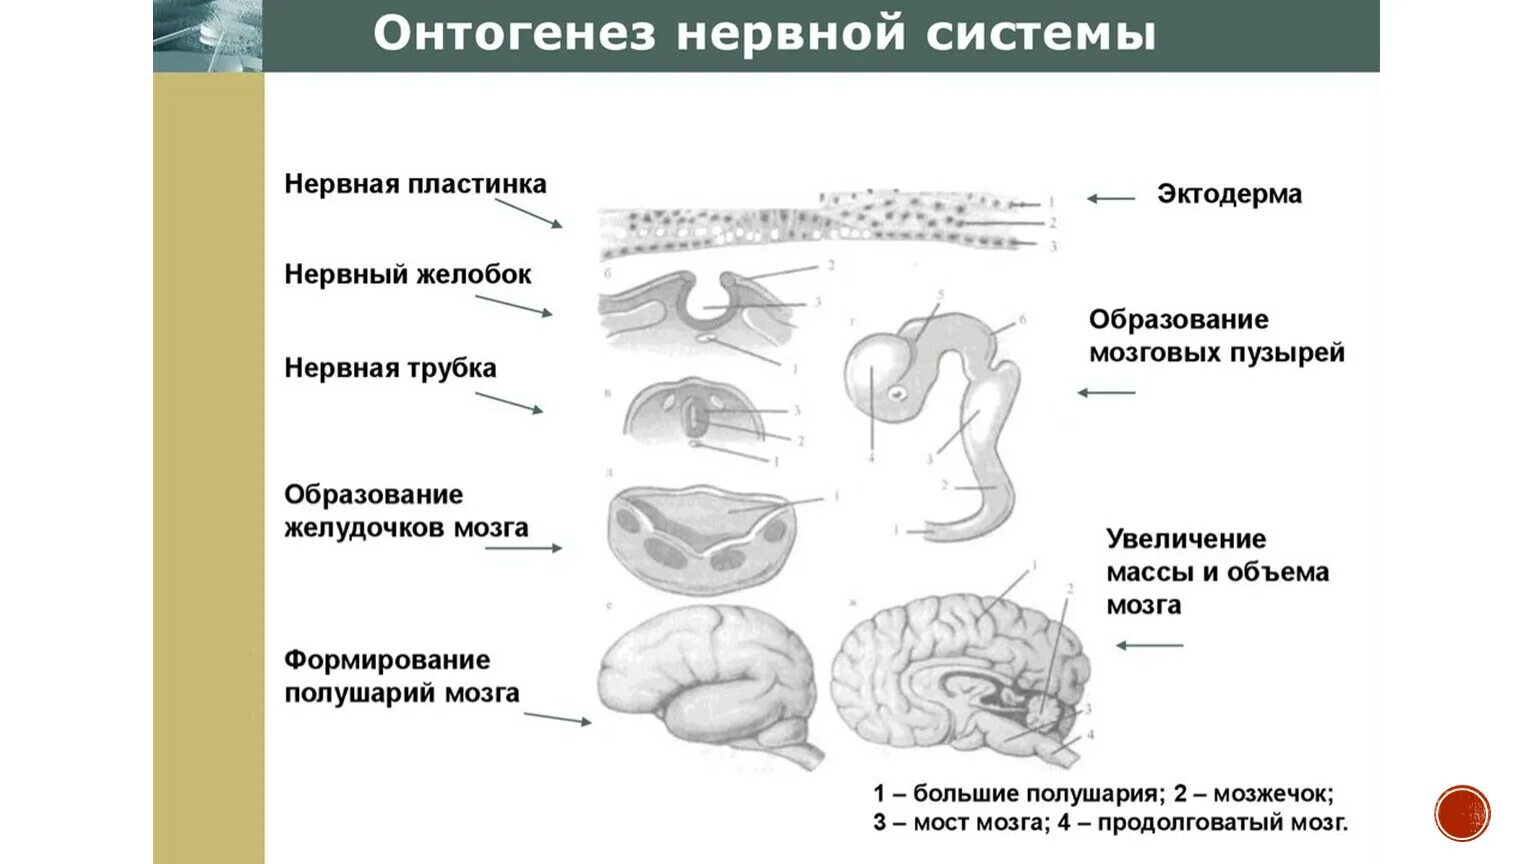 Первичная стадия развития. Основные этапы онтогенеза центральной нервной системы человека. Развитие нервной системы в онтогенезе таблица. Основные этапы онтогенеза нервной системы схематично. Основные этапы развития нервной системы в процессе онтогенеза..